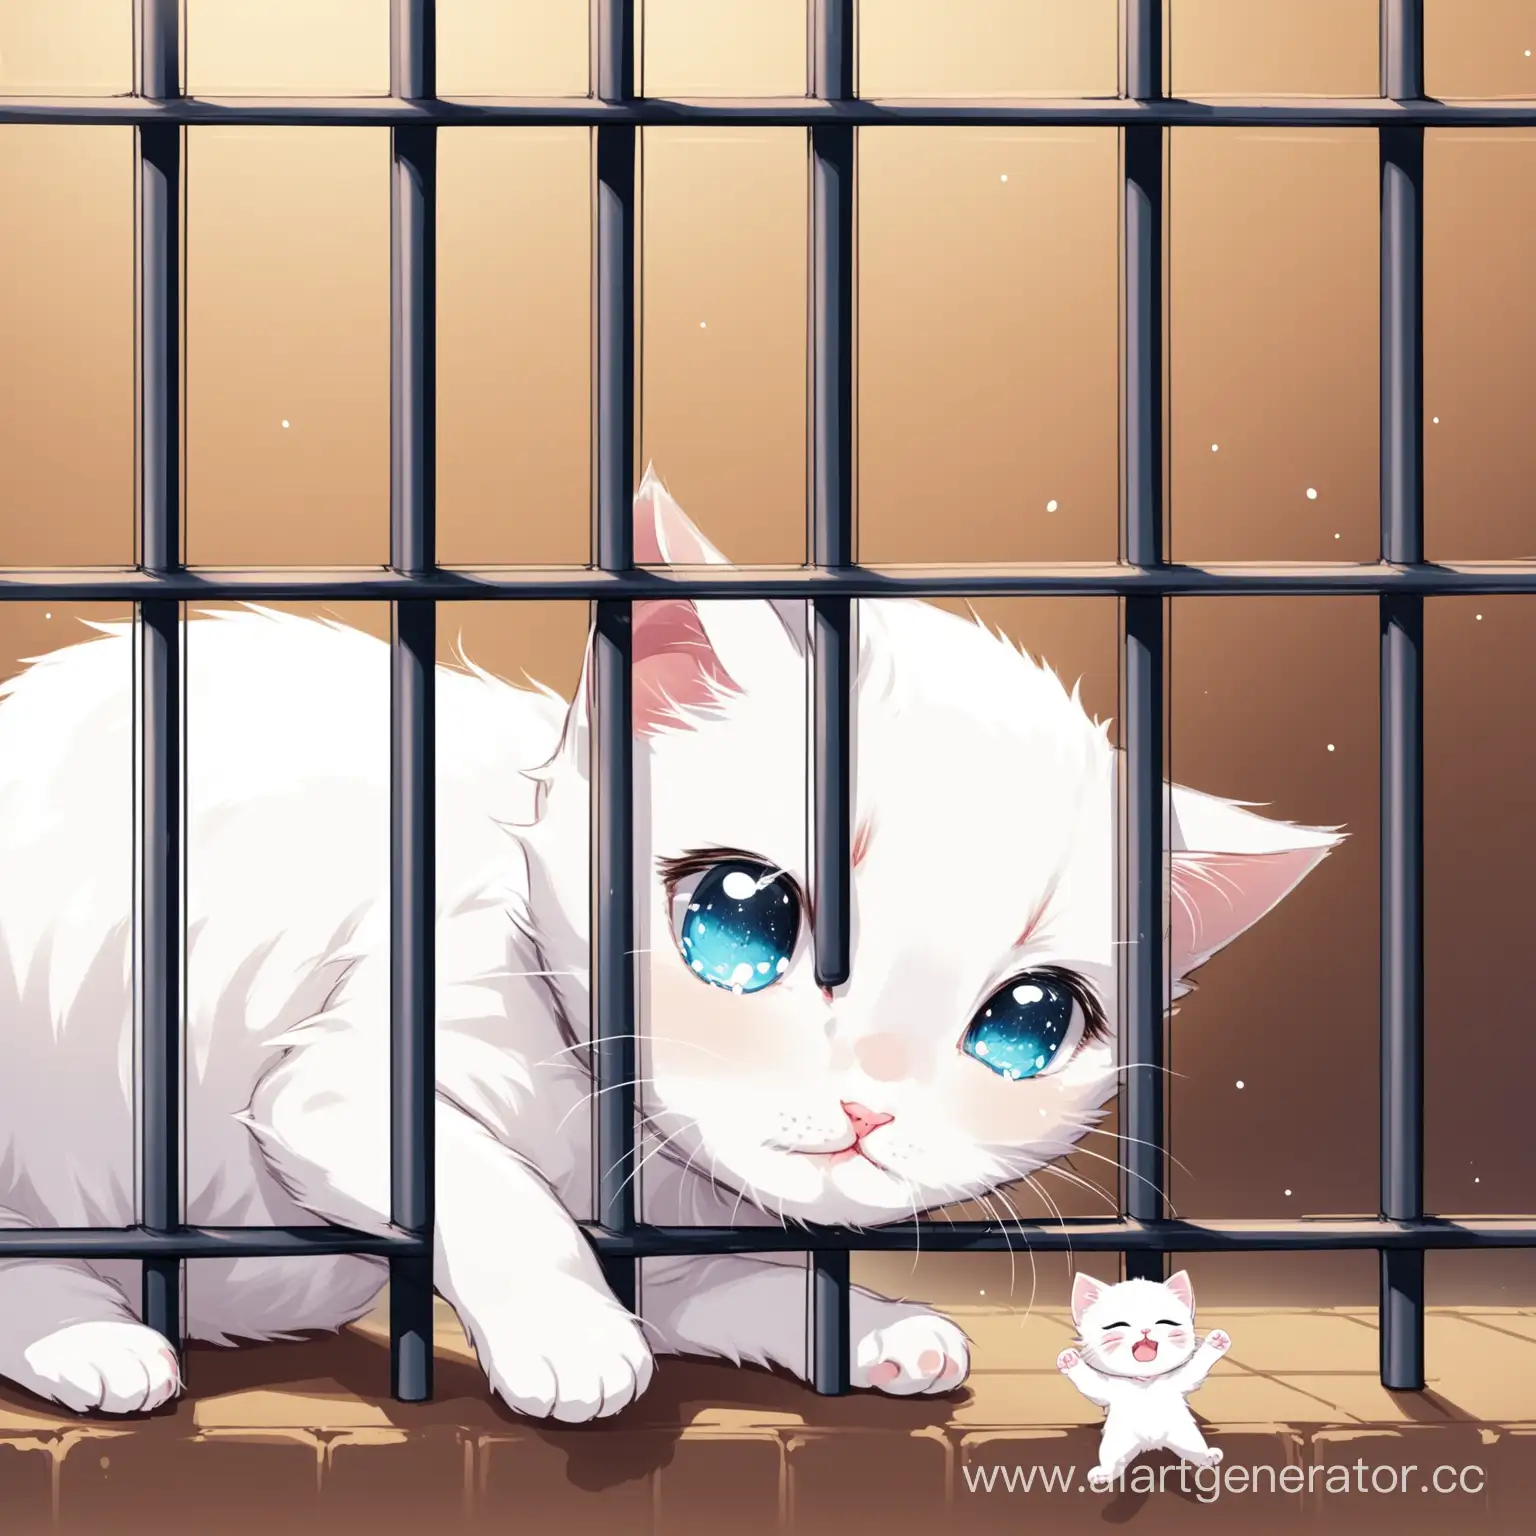 белого котика посадили в тюрьму за кражу и он плачет